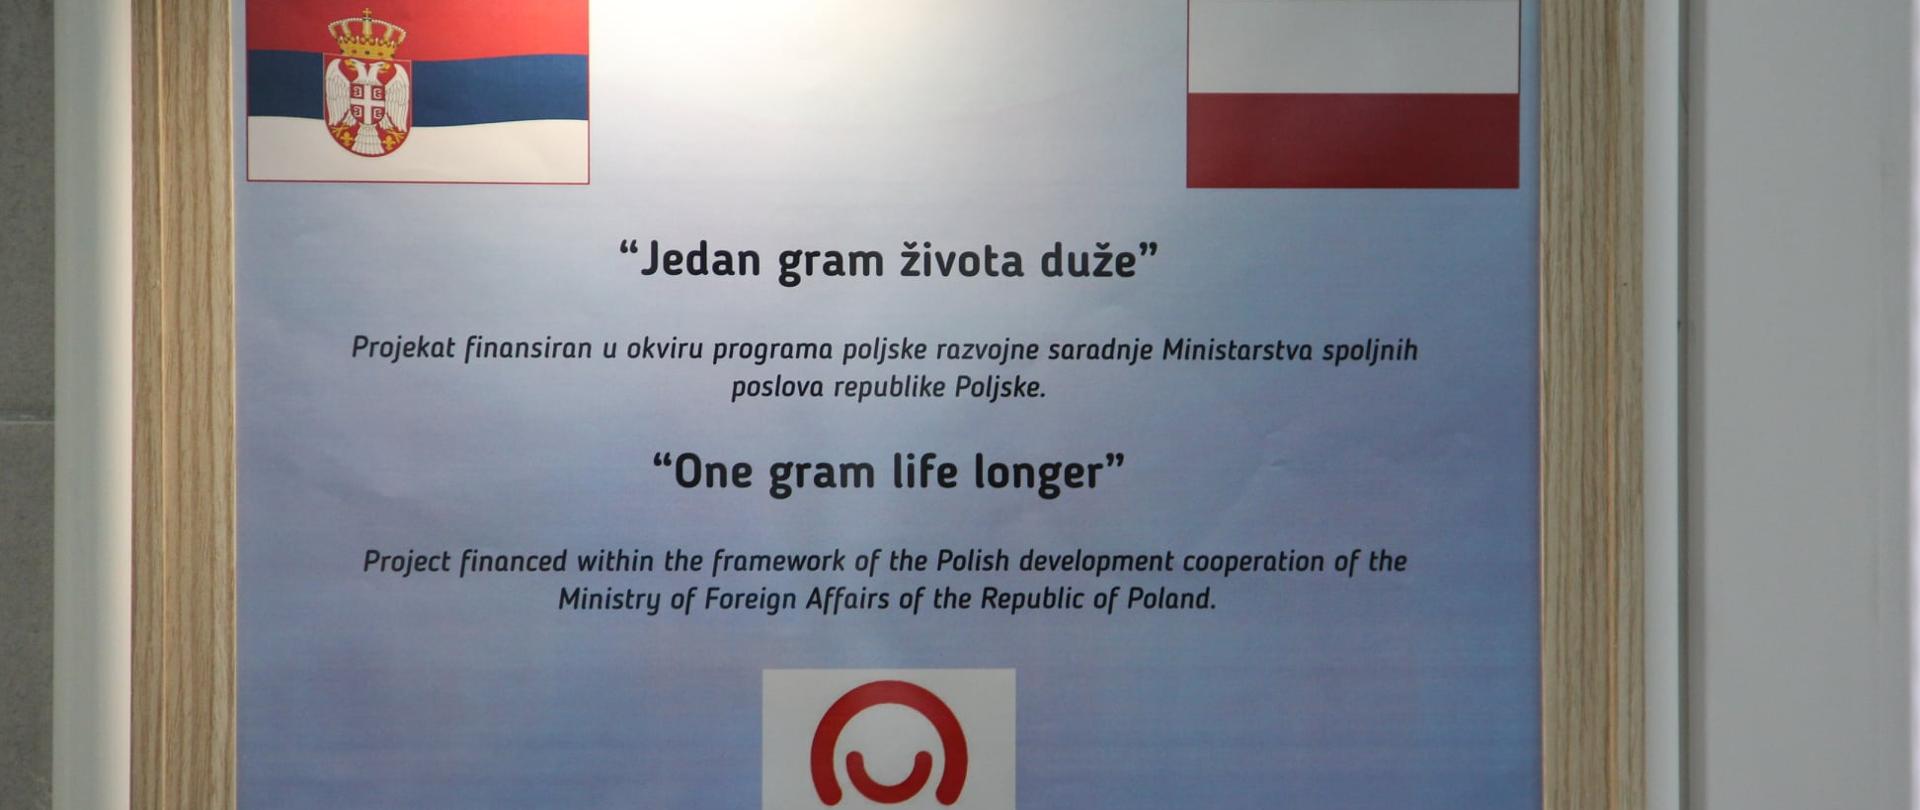 W ramach programu małych grantów, finansowanych ze środków polskiej pomocy rozwojowej, lokalny ośrodek zdrowia w Ivanjicy (południowo-zachodnia Serbia) otrzymał specjalistyczny sprzęt medyczny o wartości 11.000 euro zakupiony przez Ambasadę RP w Belgradzie. 